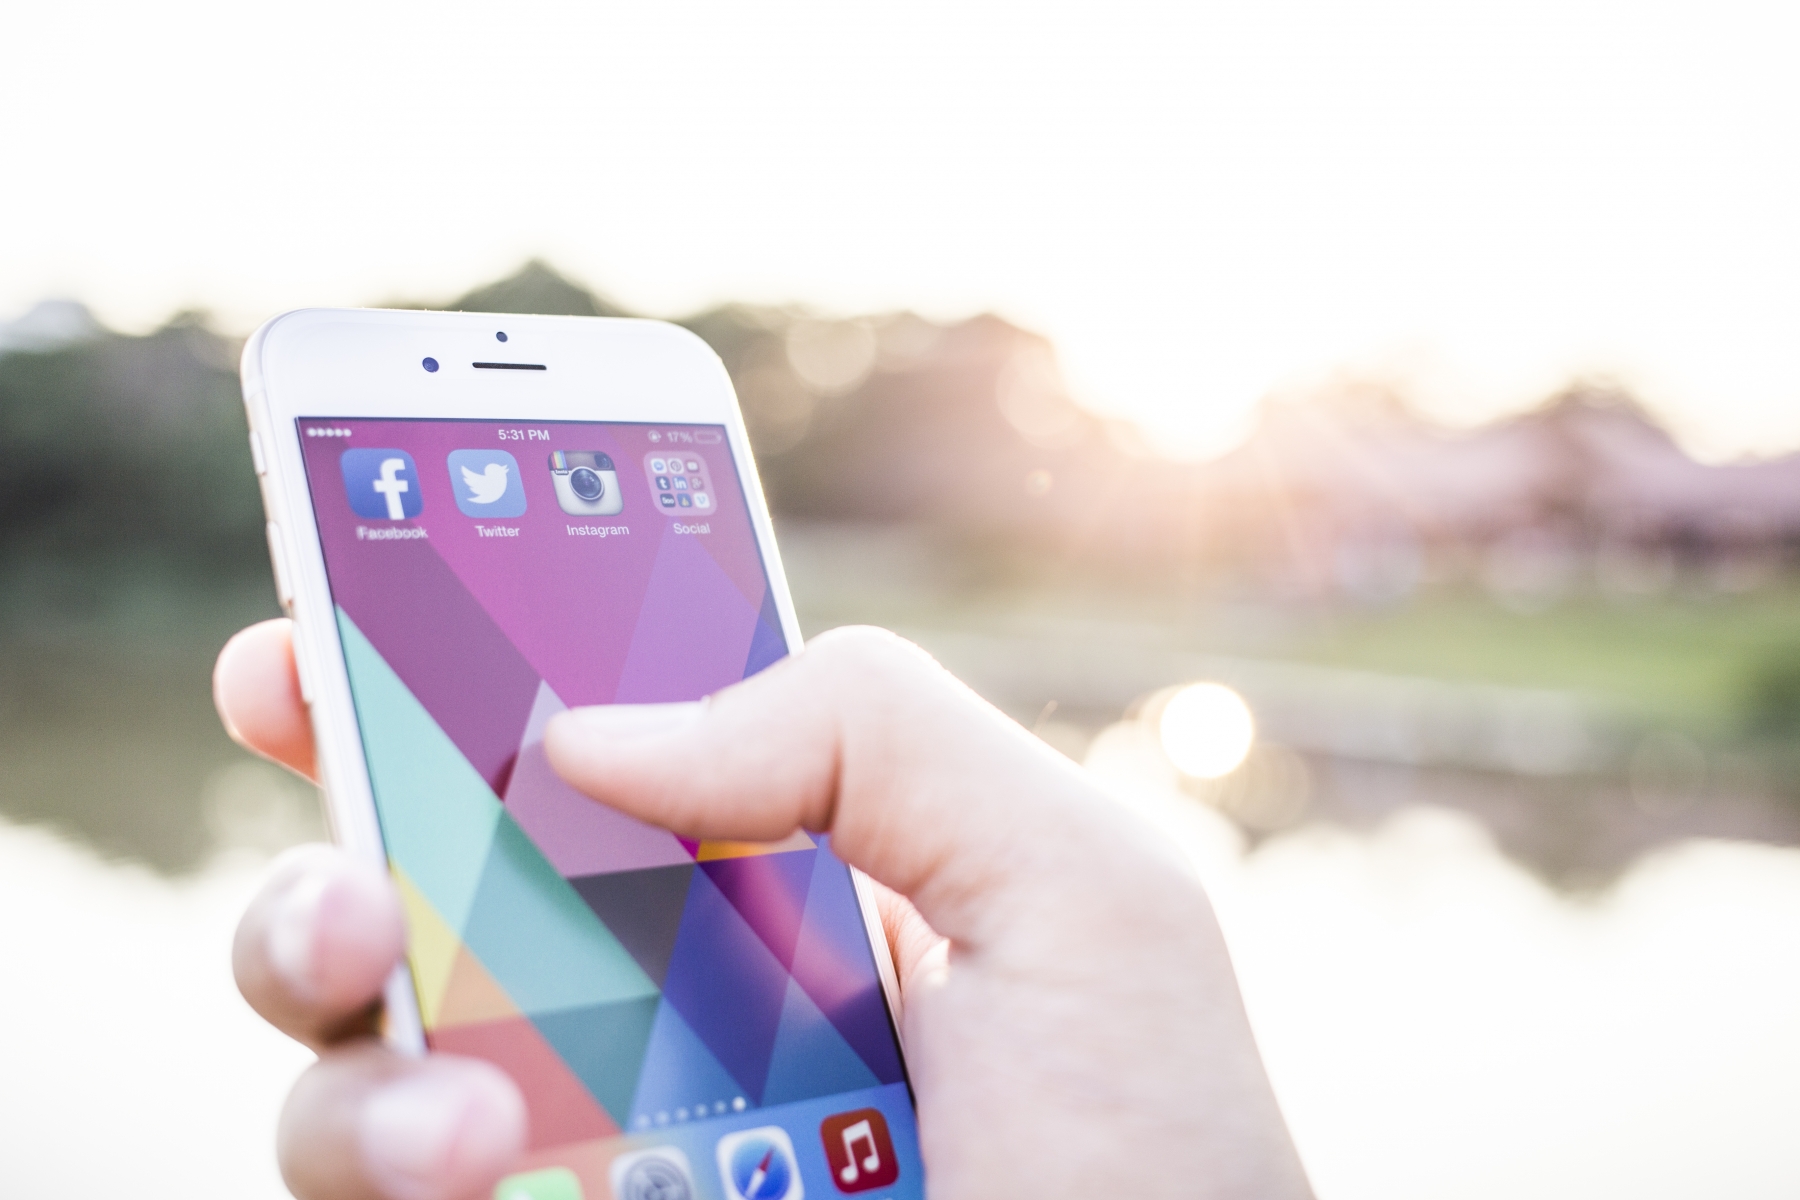 En hand håller en mobiltelefon där man ser ikonerna för Facebook, Twitter och Instagram.